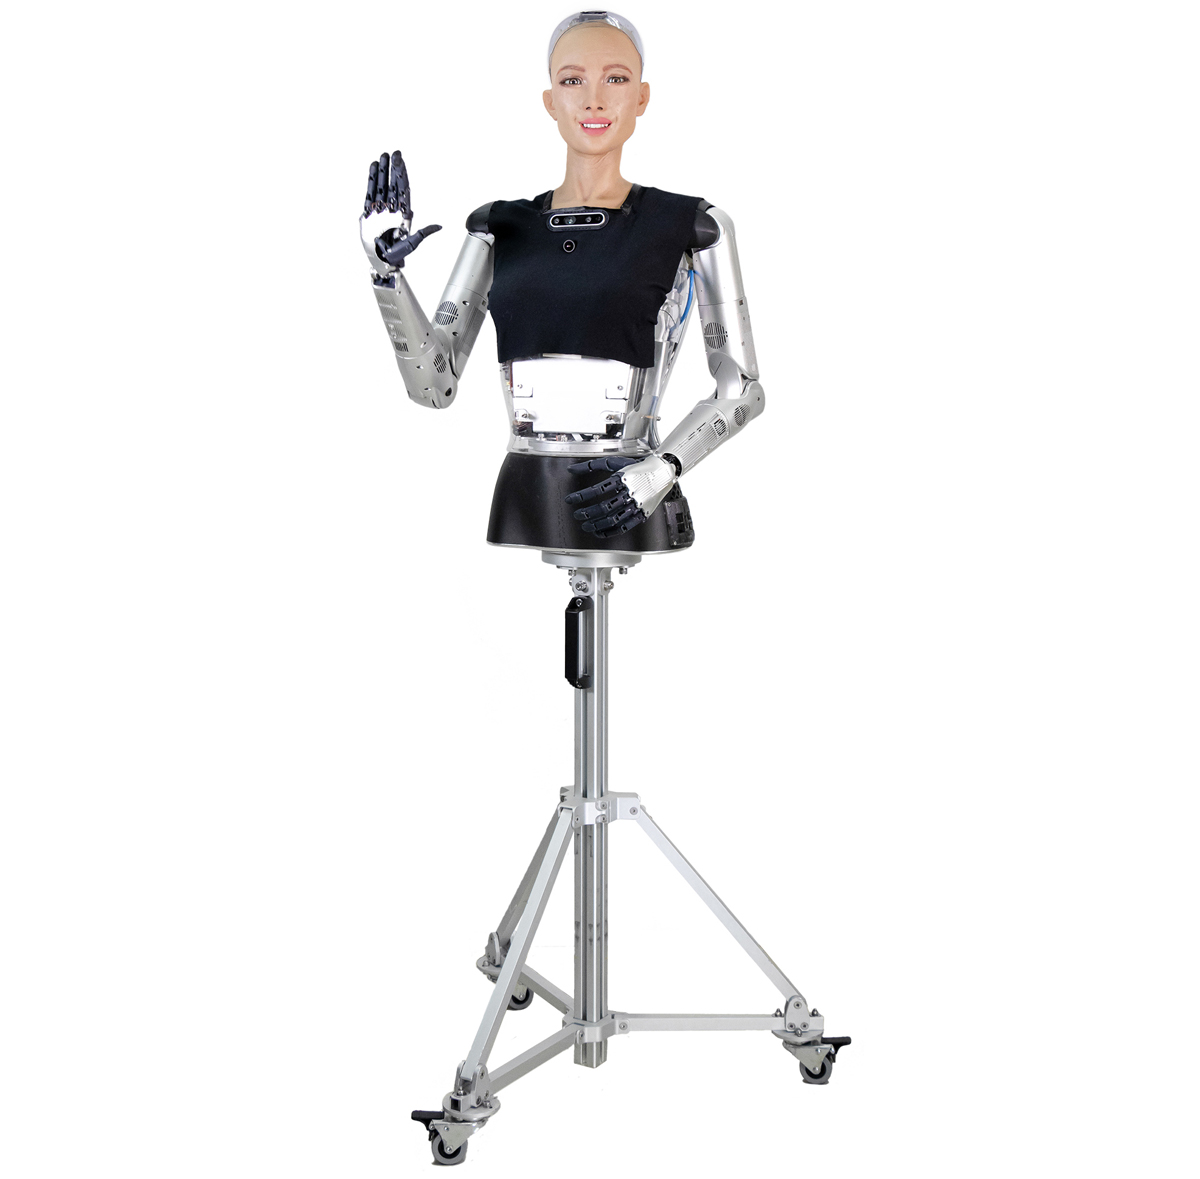 Robot Humanoide Sophia 2020 Versión R&D de Hanson Robotics - Haga Clic para Ampliar